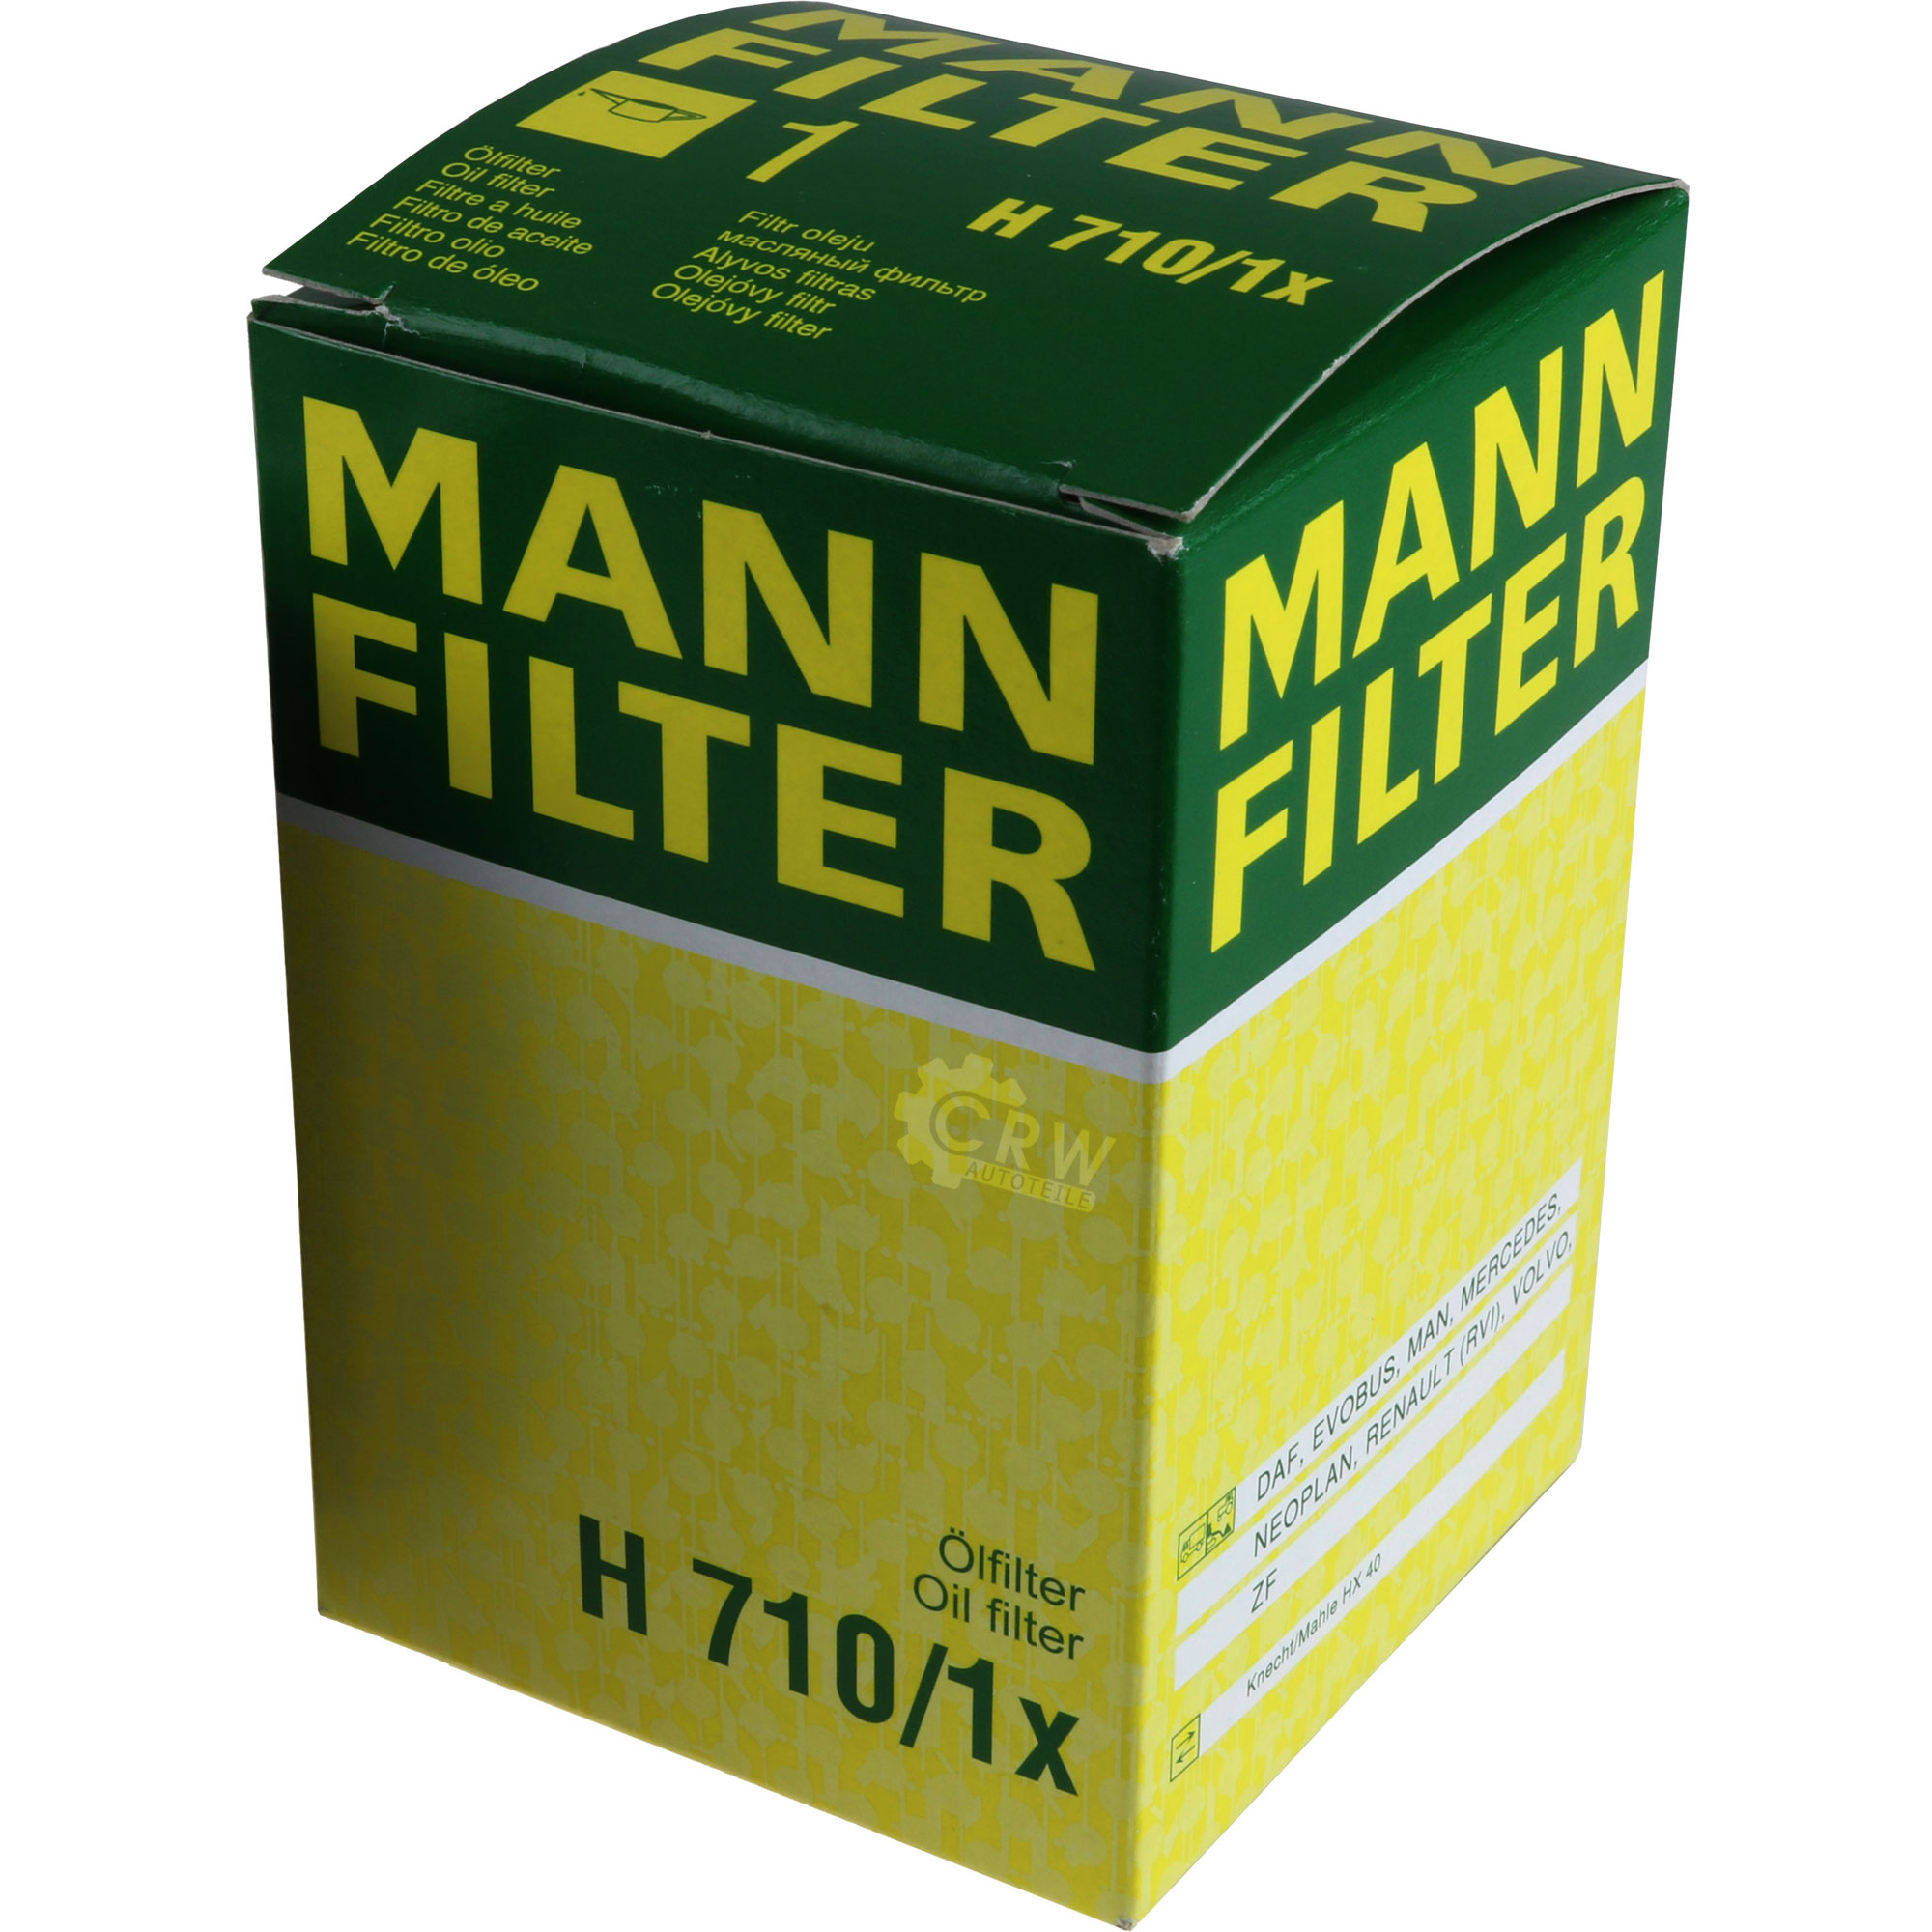 MANN-FILTER Hydraulikfilter für Automatikgetriebe H 710/1 x